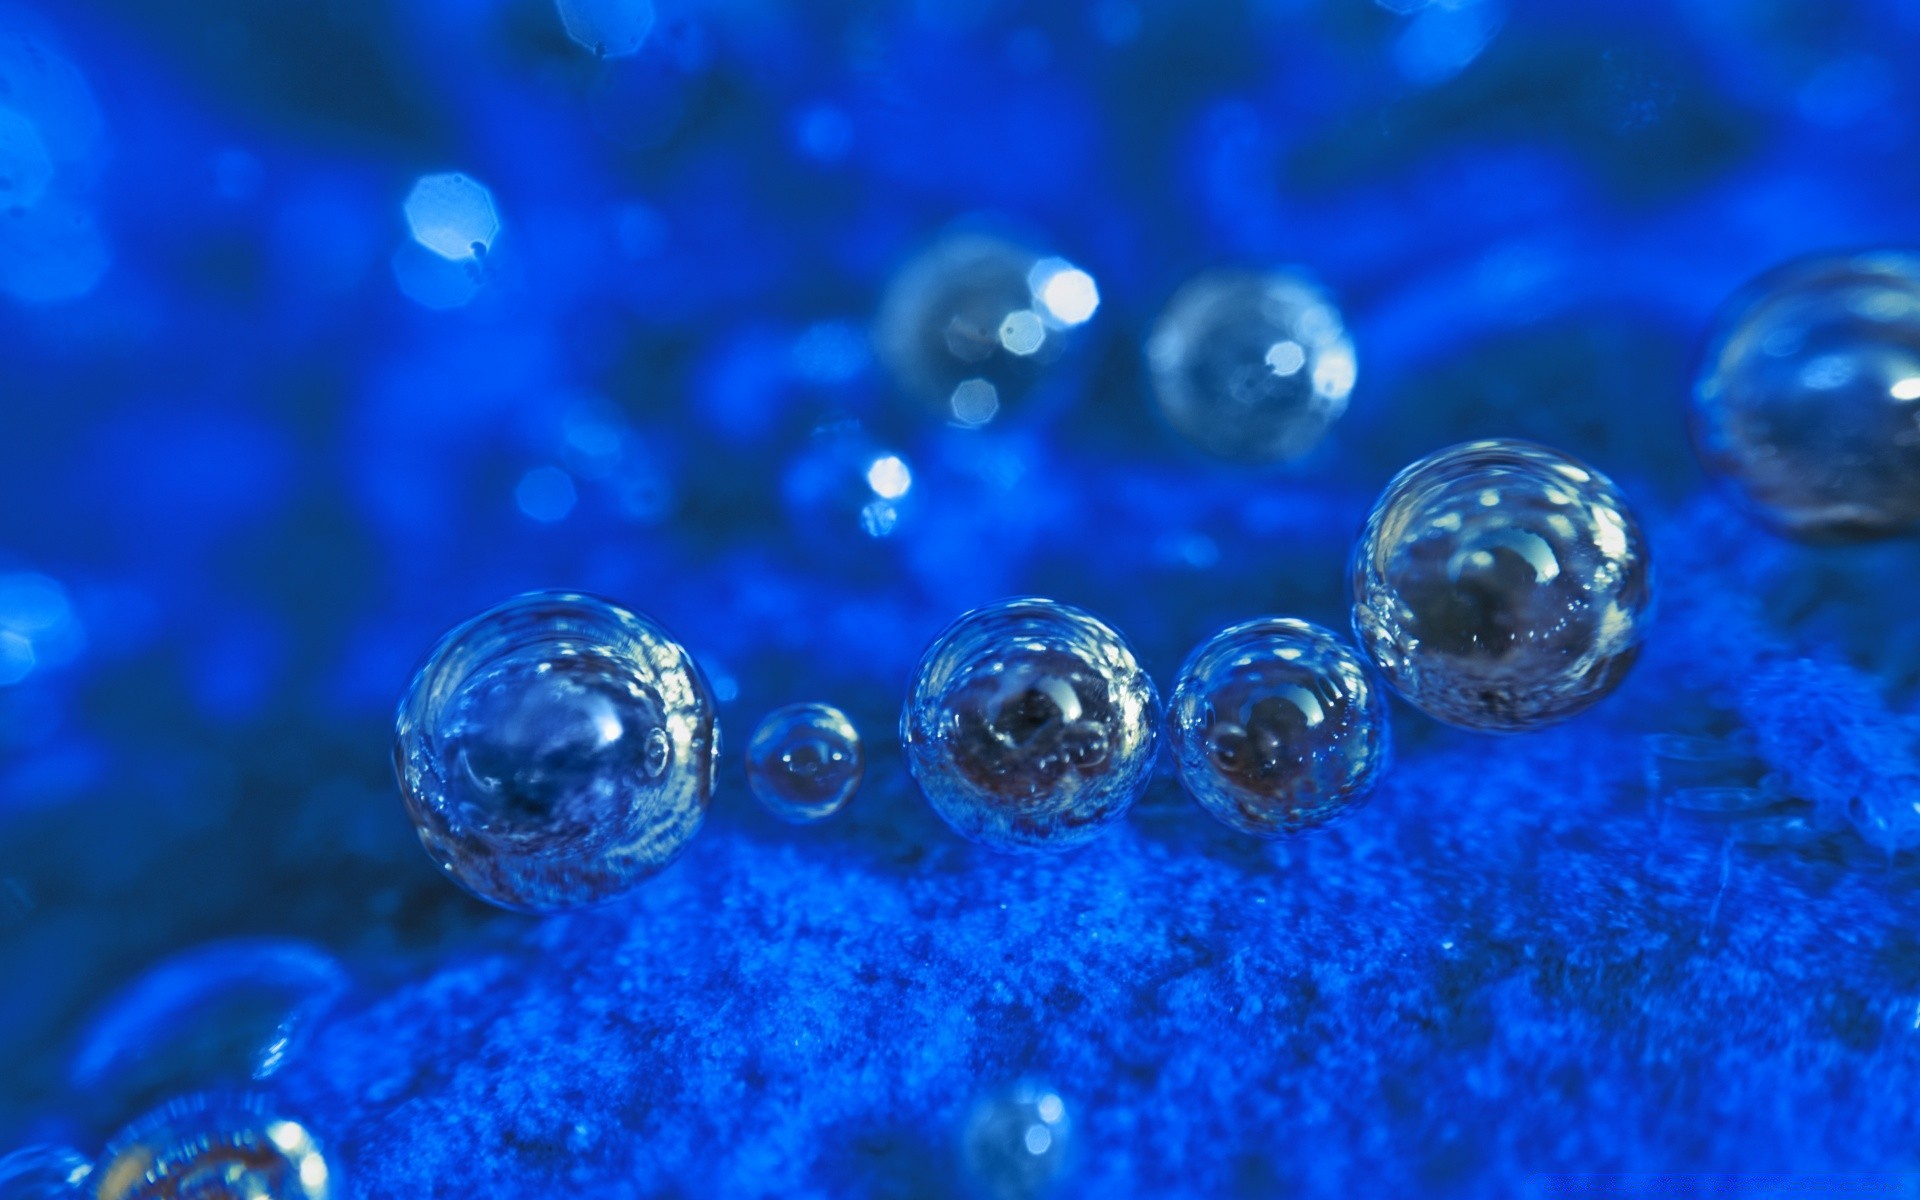 капельки и вода пузырь подводный светит воды мокрый падение бирюза сфера чистота свет чистые понятно капли отражение дождь всплеск рабочего стола яркий